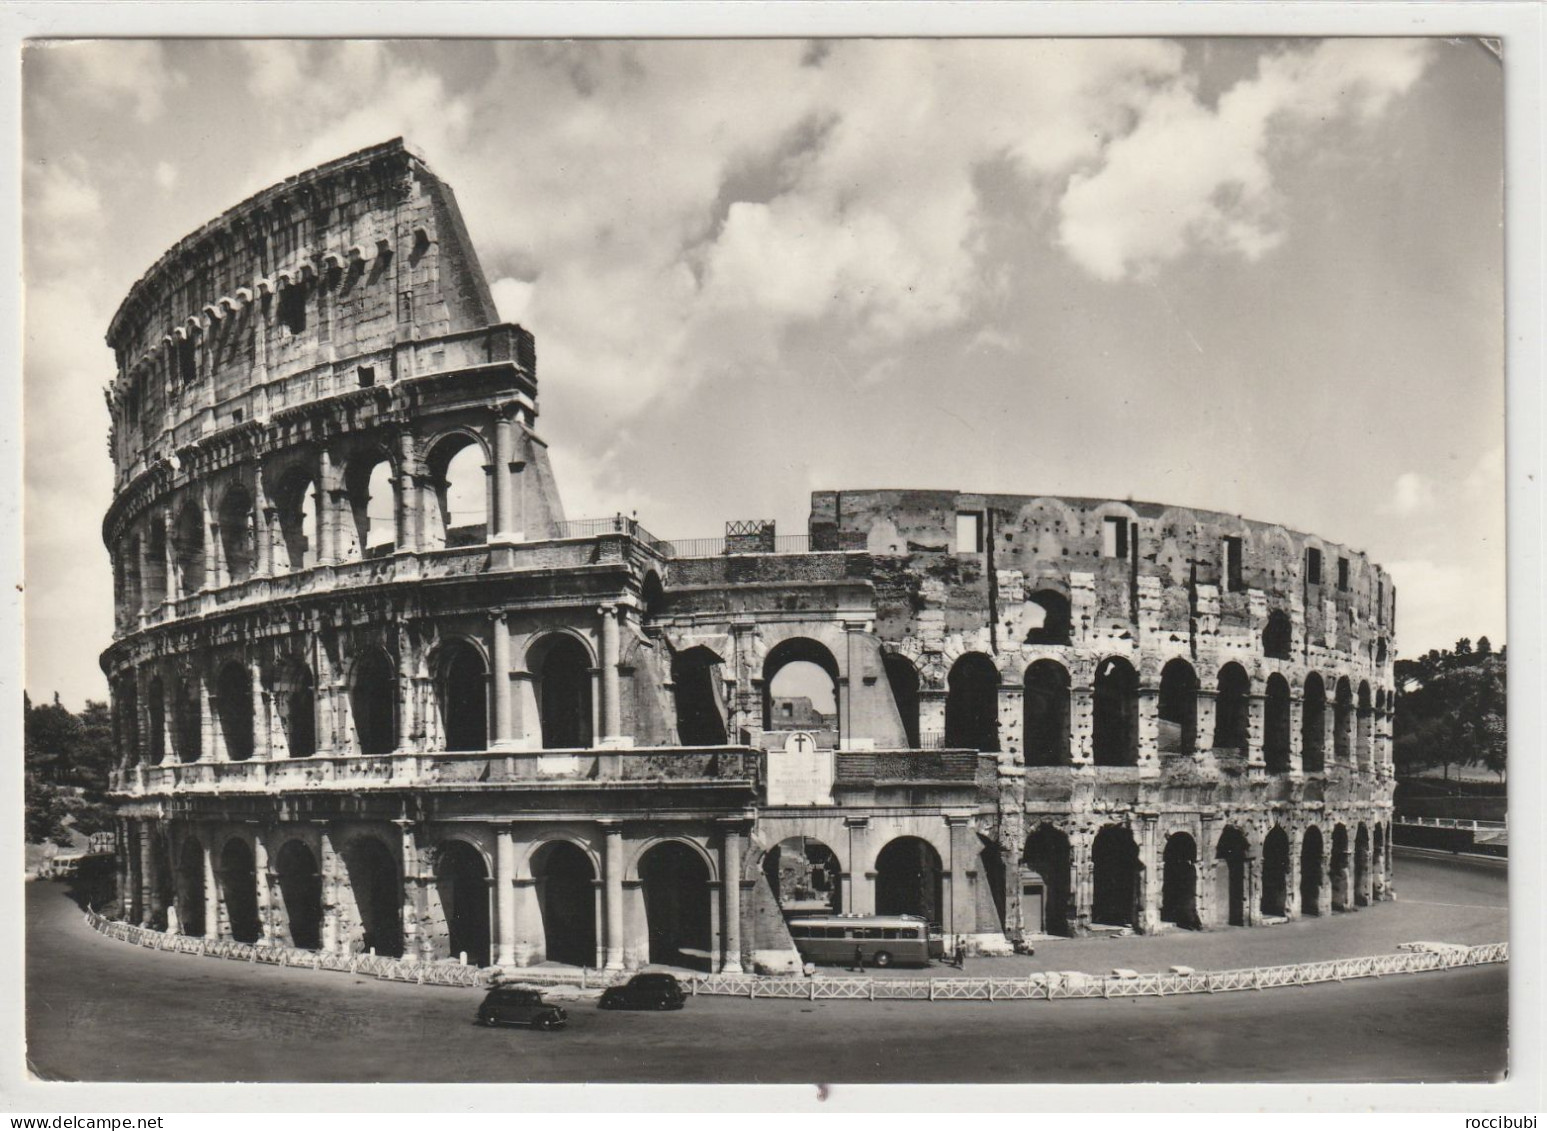 Roma, Kolosseum, Italien - Colosseum